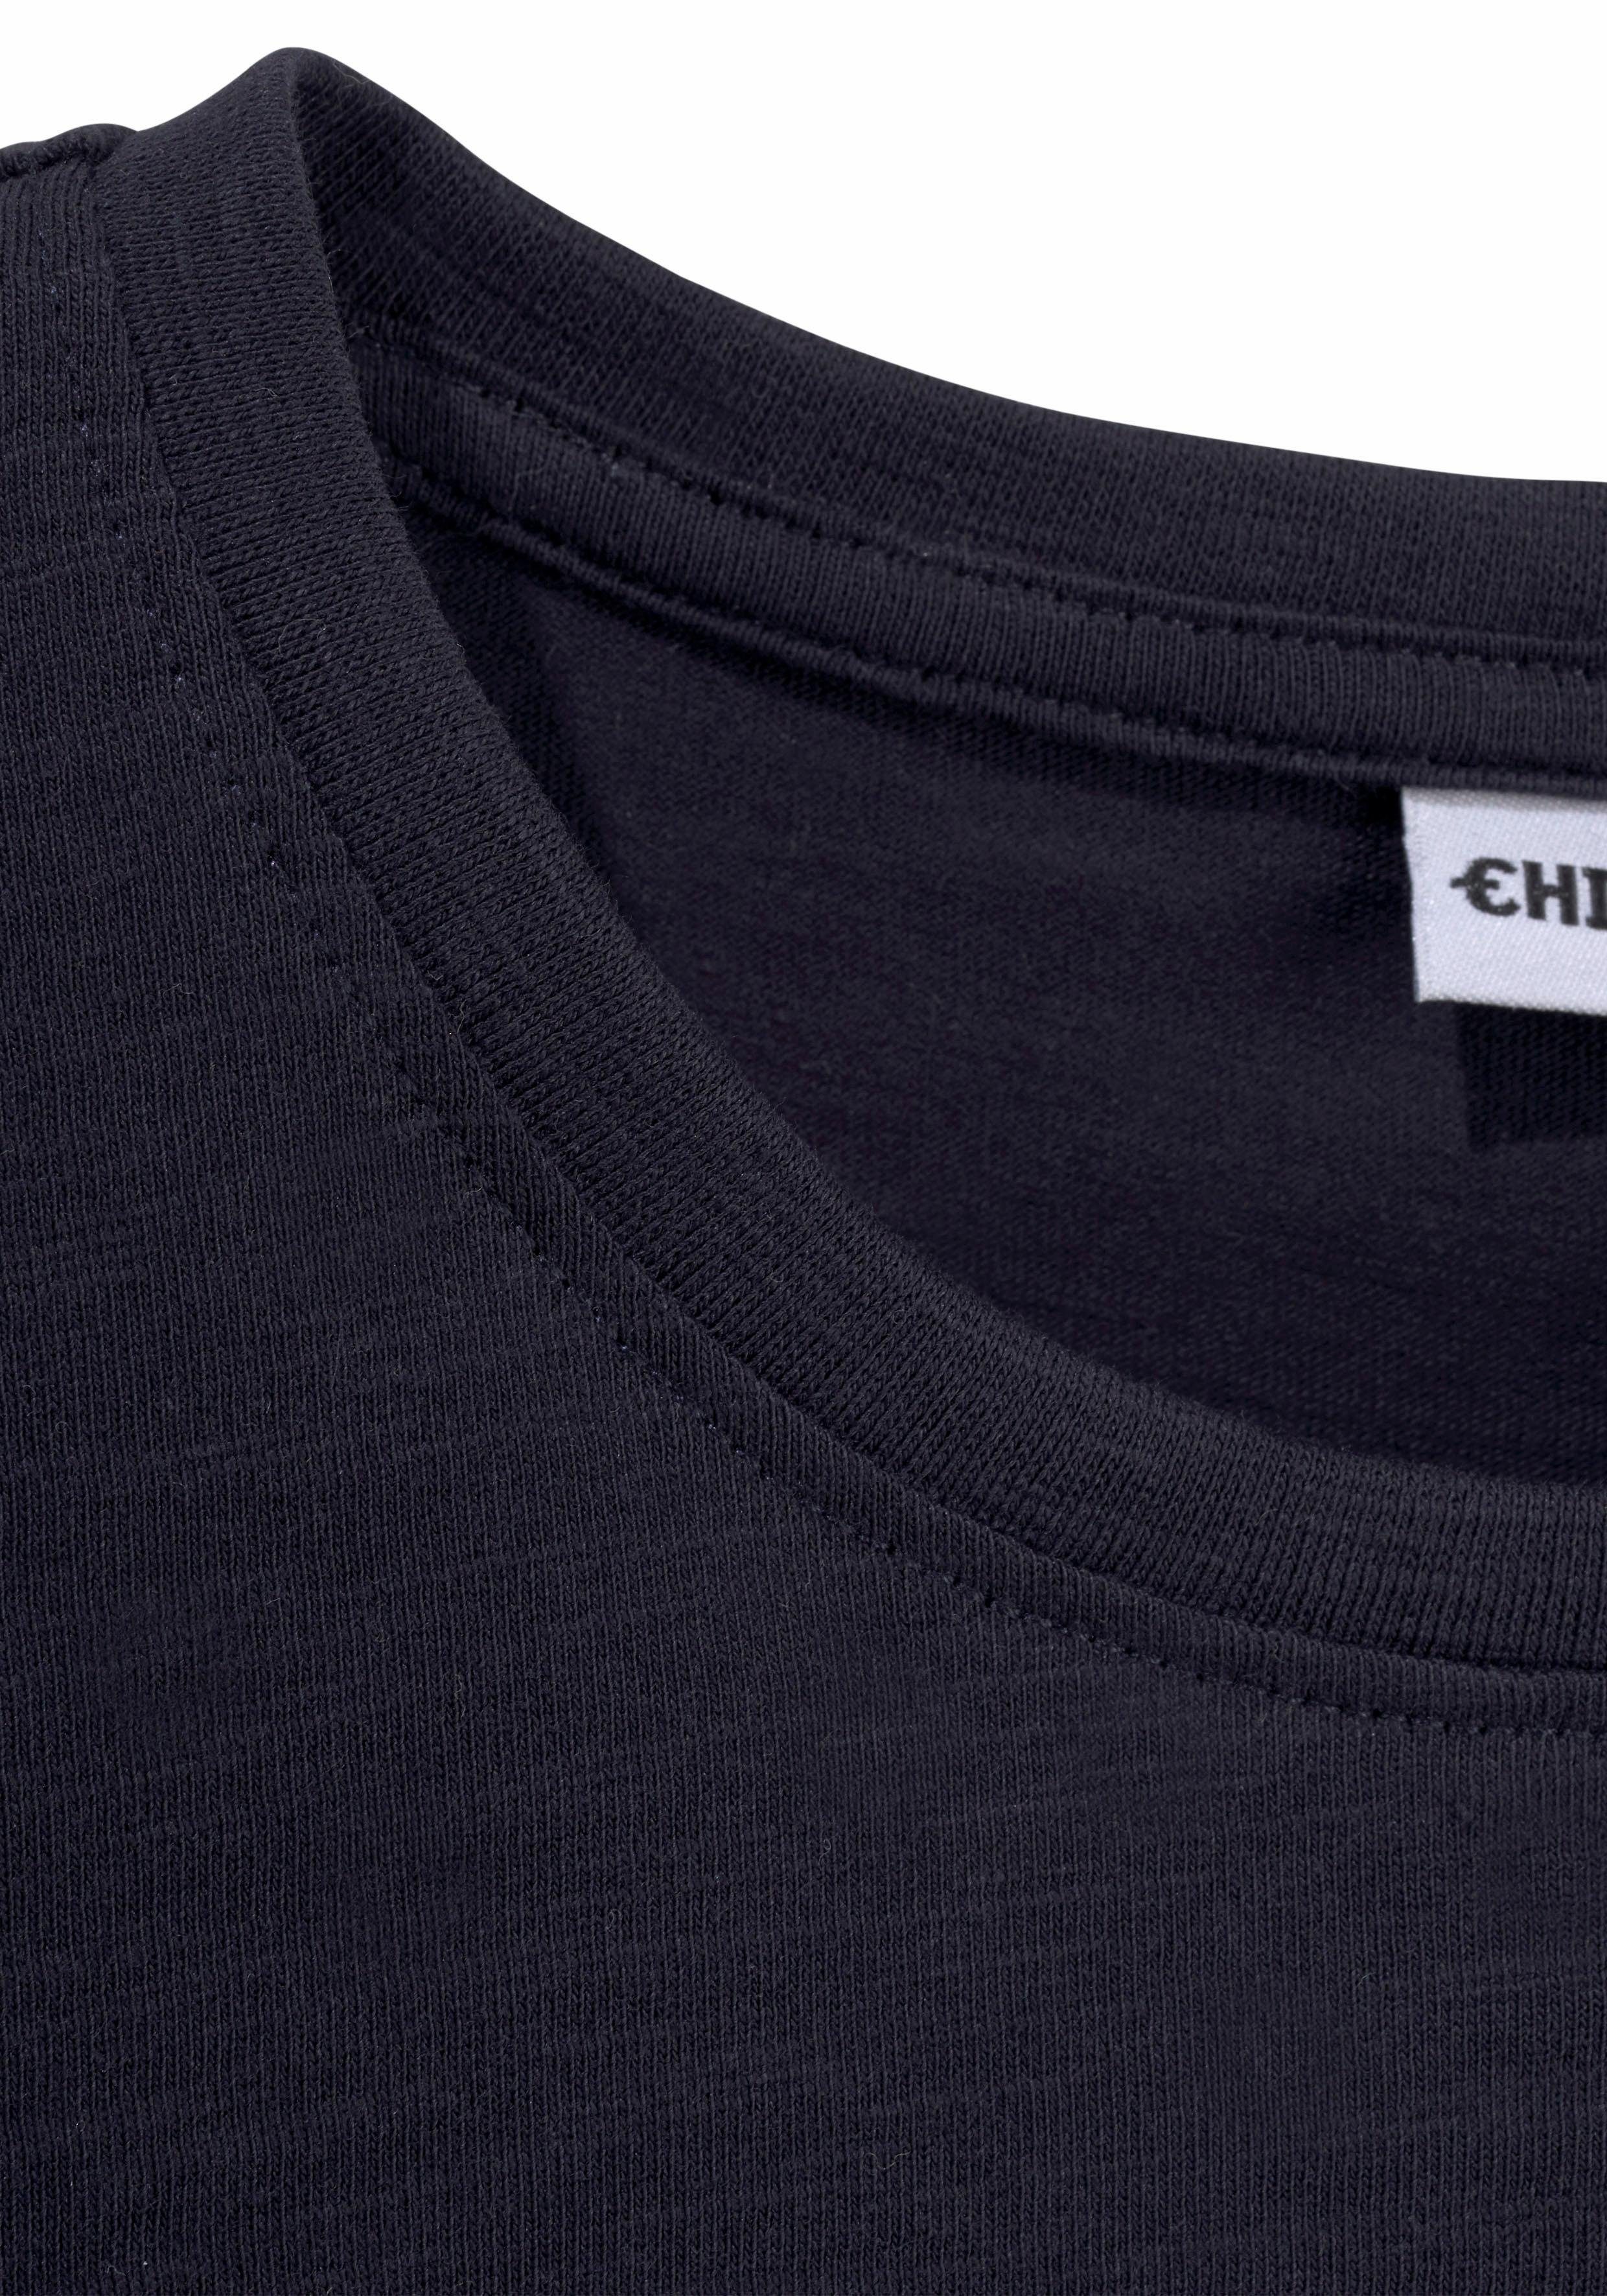 Chiemsee mit BASIC T-Shirt vorn Logodruck